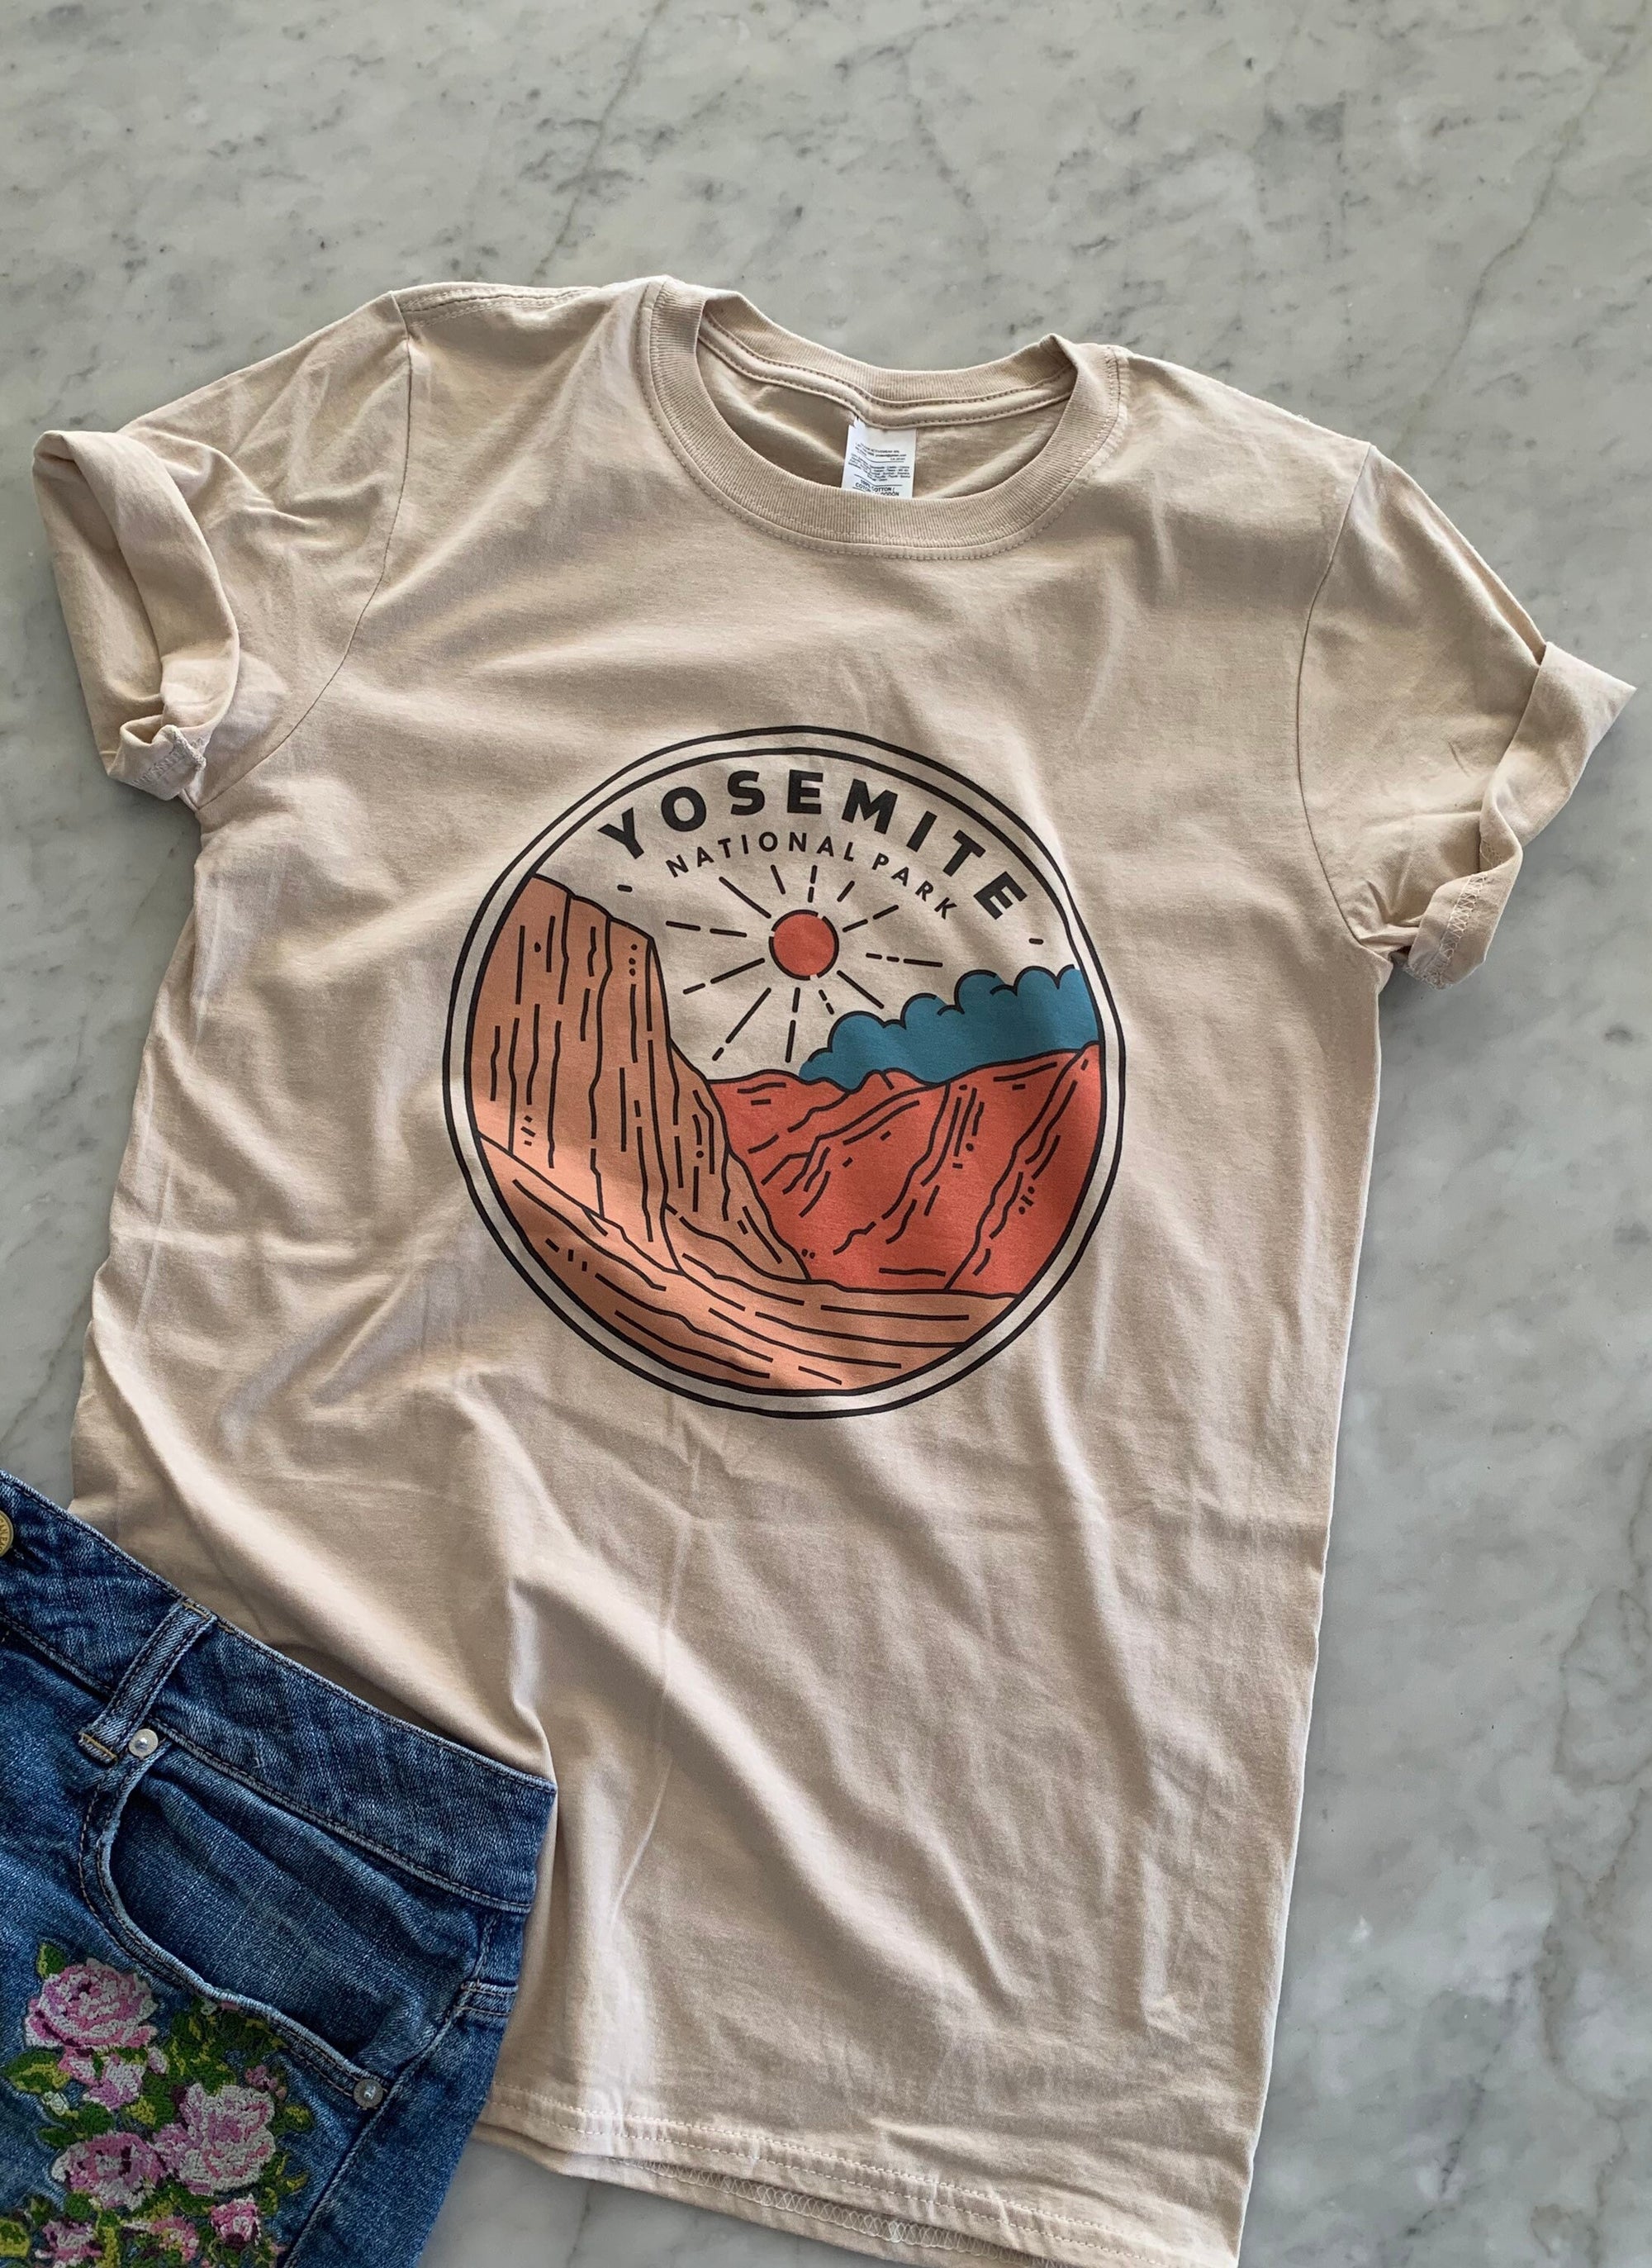 Yosemite Forrest Park Shirt , Souvenir Shirt, Trip Shirt, Destination Shirt